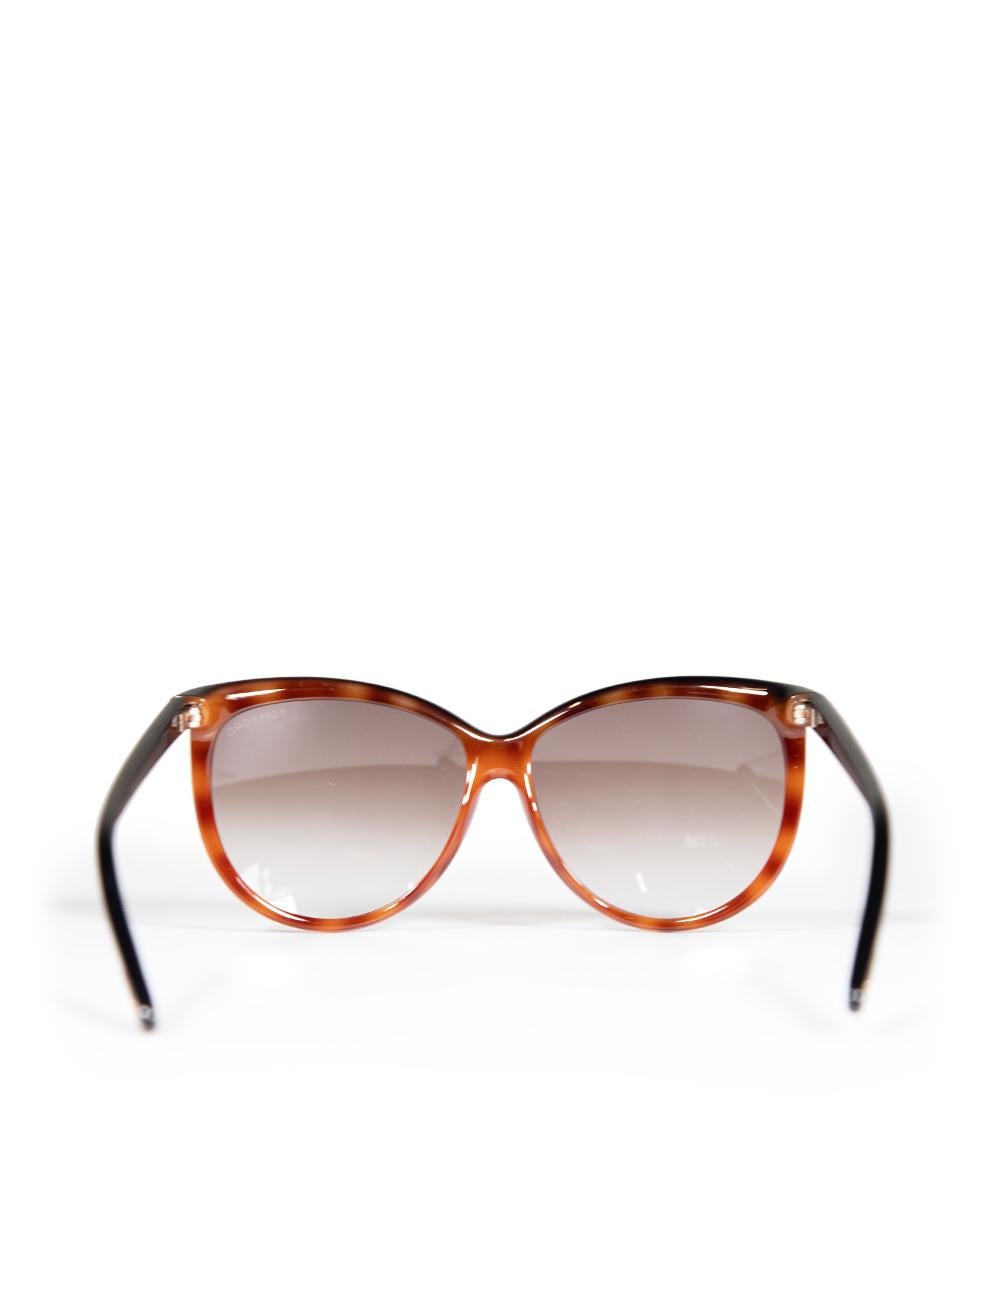 Women's Tom Ford Black Havana Josephine Sunglasses For Sale